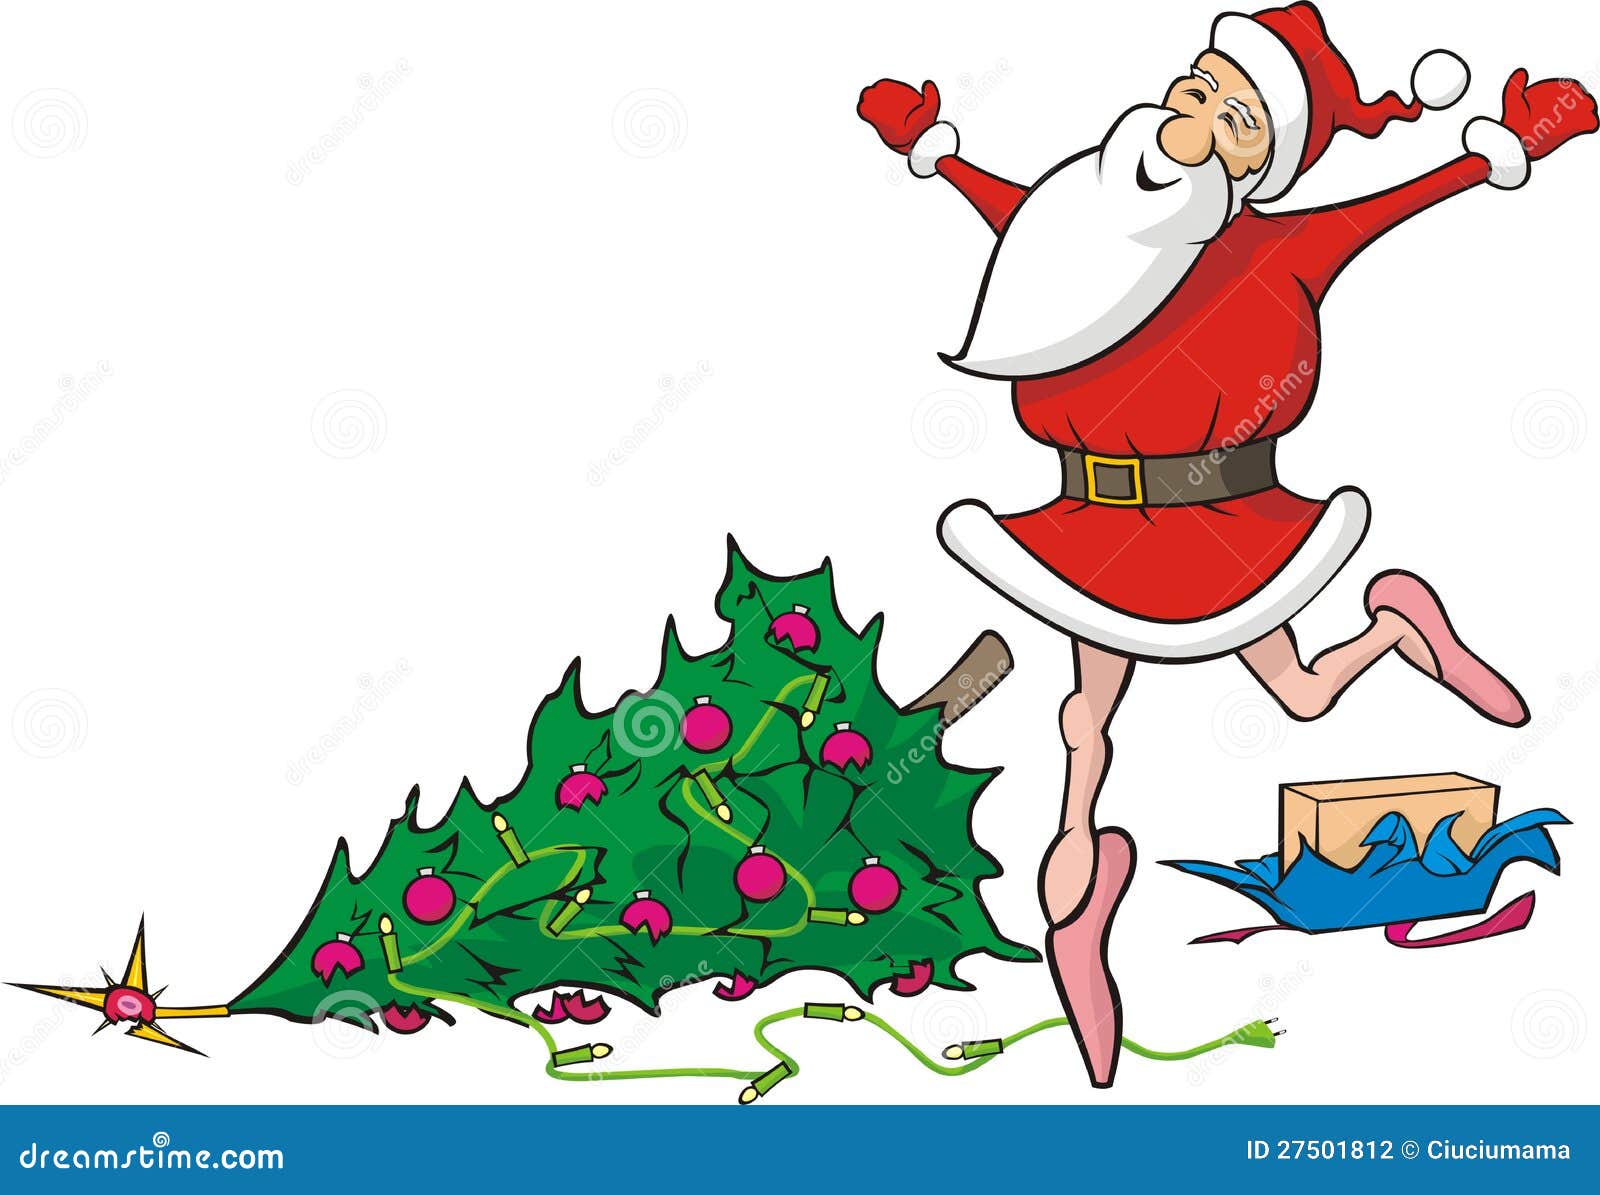 Babbo Natale Balla.Perso Nel Ballare Il Babbo Natale Natale Demolito Illustrazione Vettoriale Illustrazione Di Abete Artistico 27501812